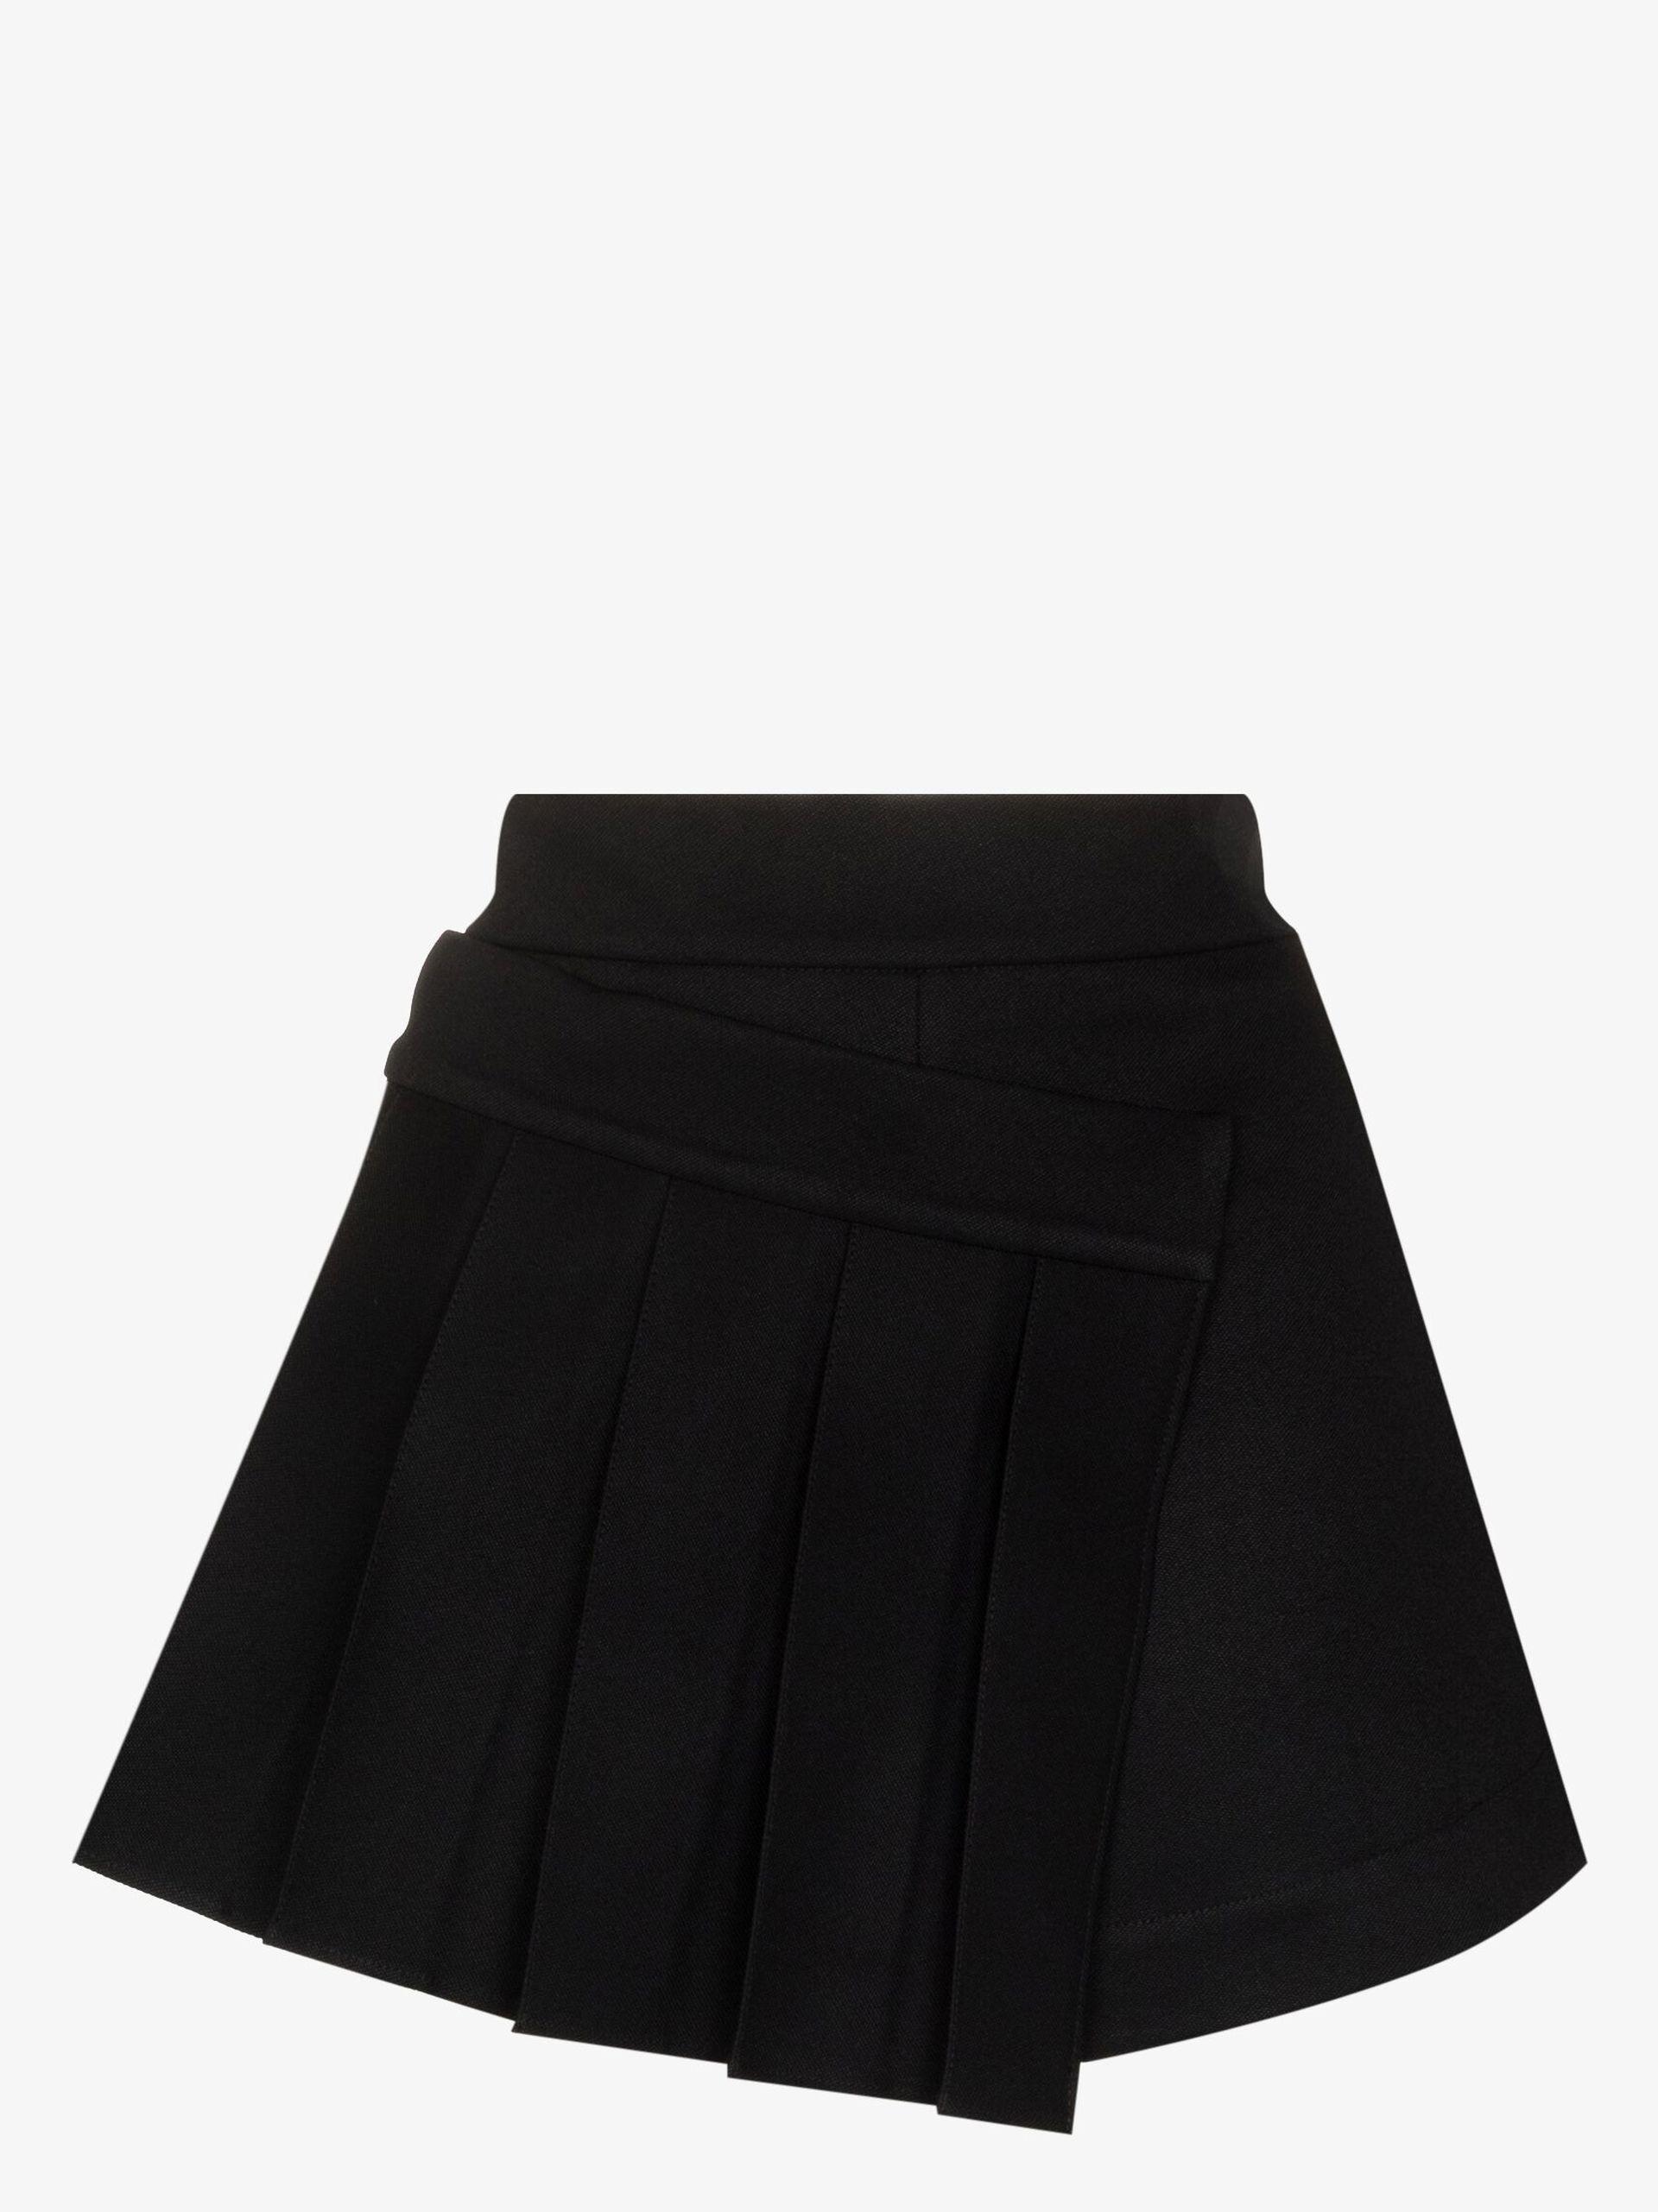 Short black pleated skirt